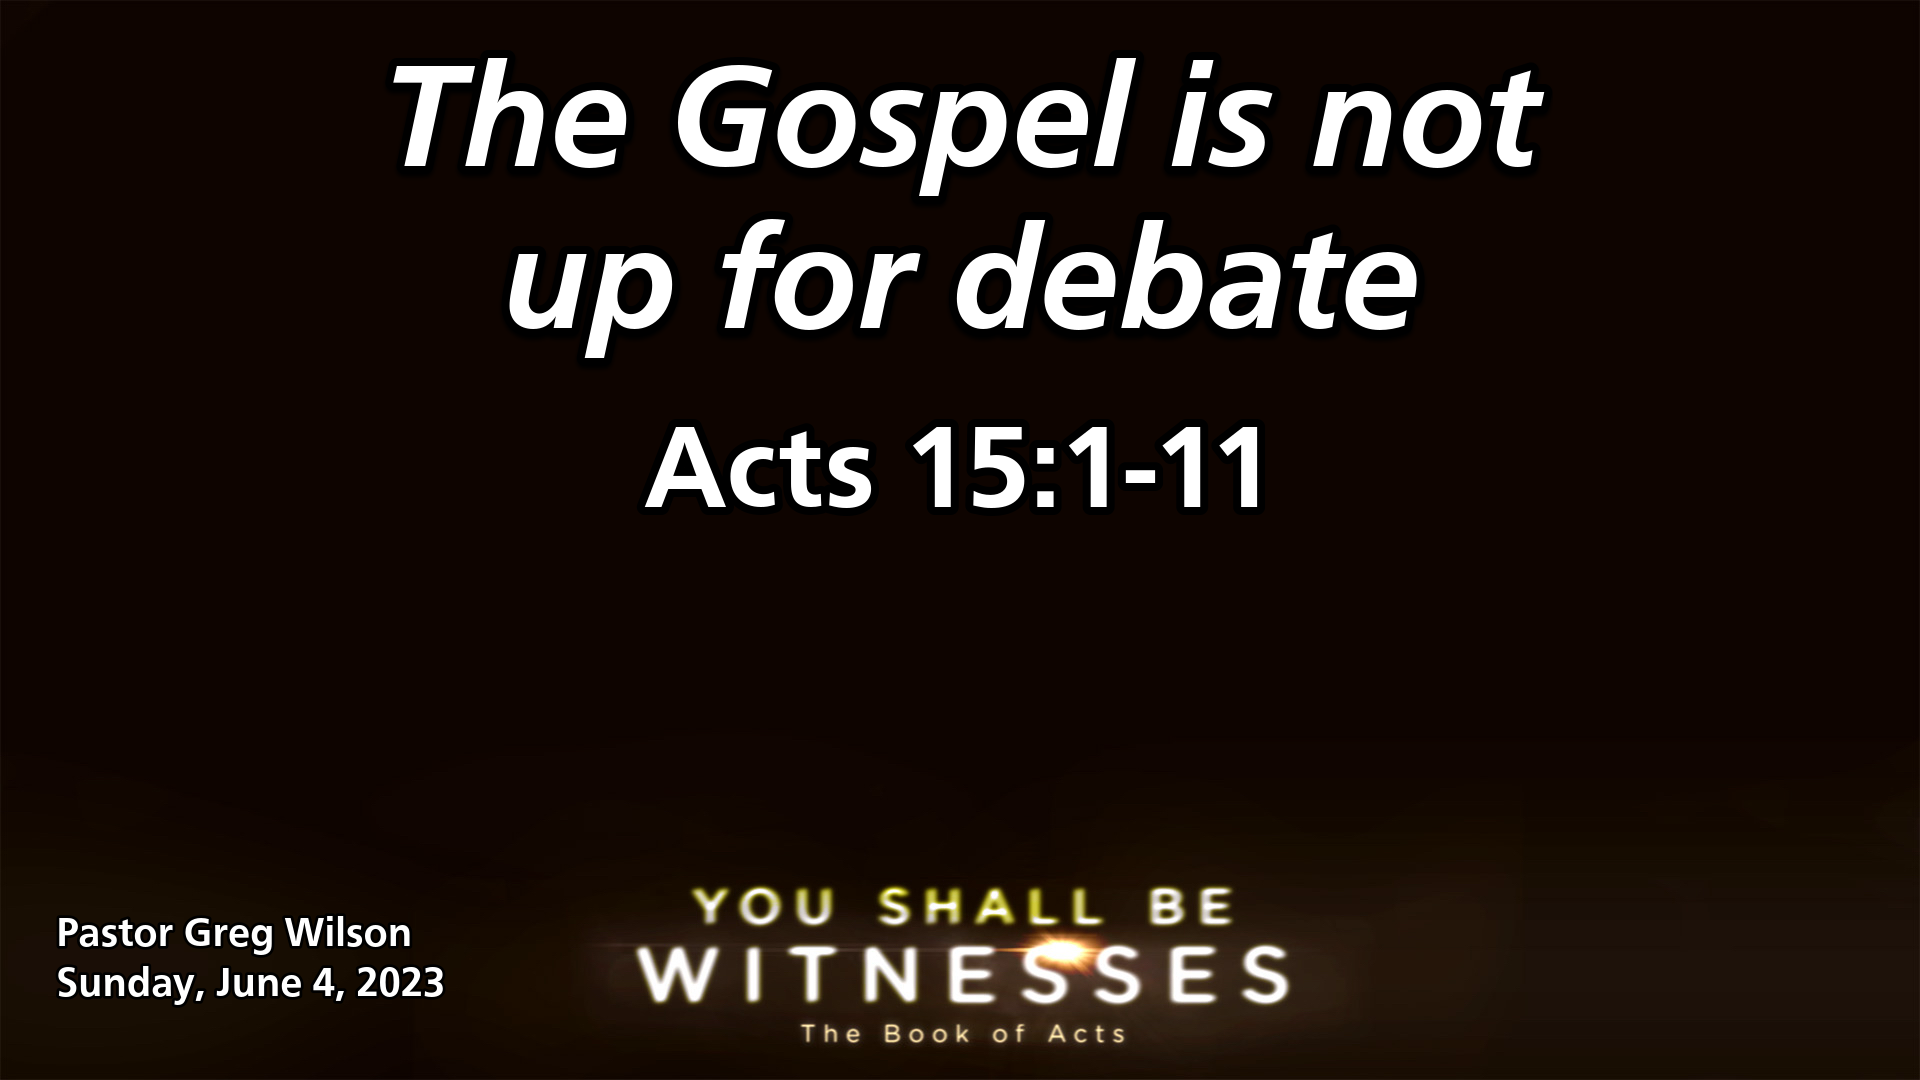 "The Gospel is not up for debate"